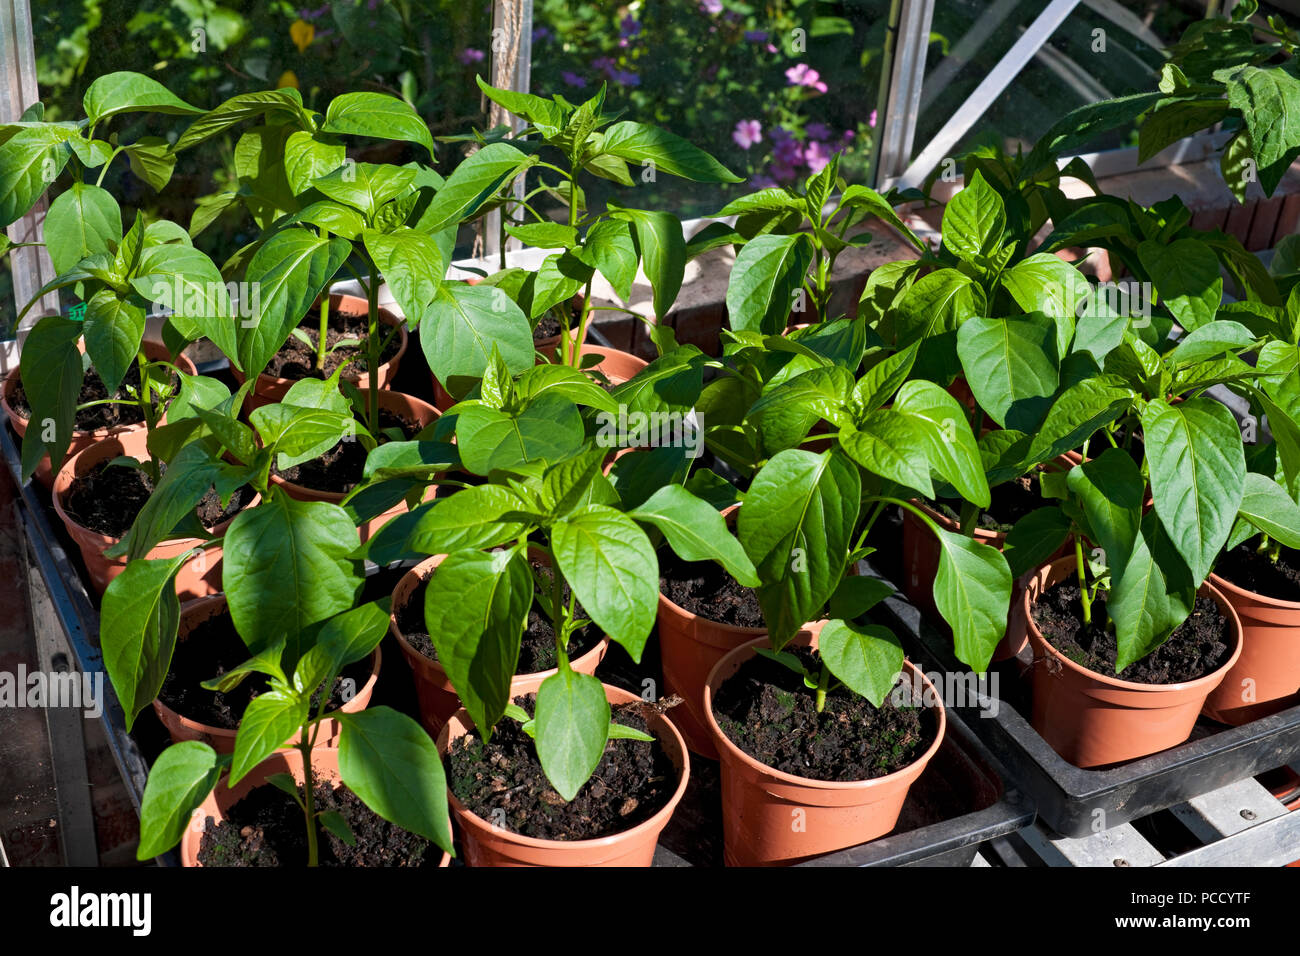 Gros plan de jeunes plants de poivron vert Culture dans une serre dans des pots en été Angleterre Royaume-Uni Royaume-Uni Grande-Bretagne Banque D'Images